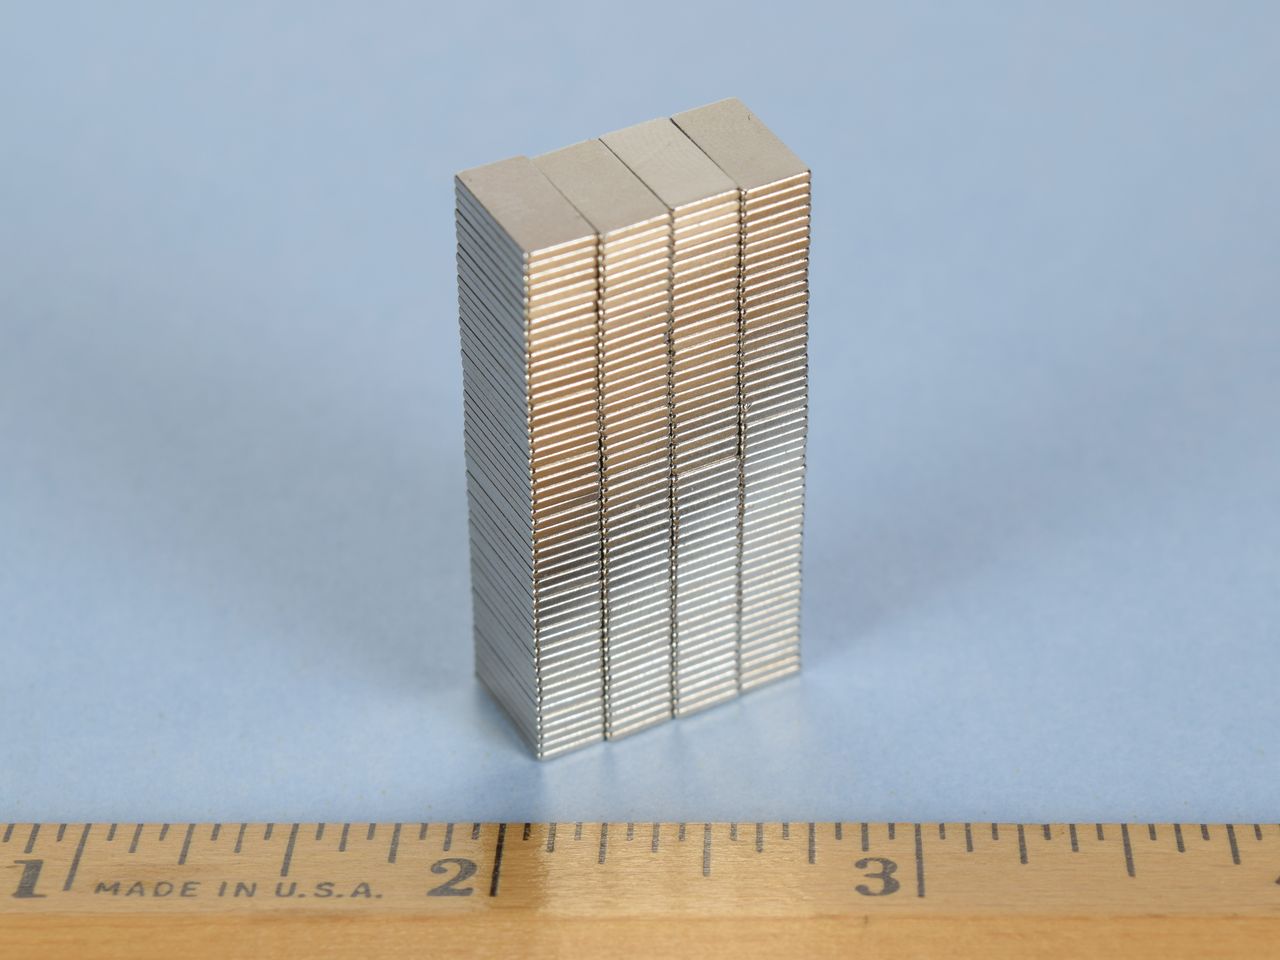 B6301 - Neodymium Block Magnet